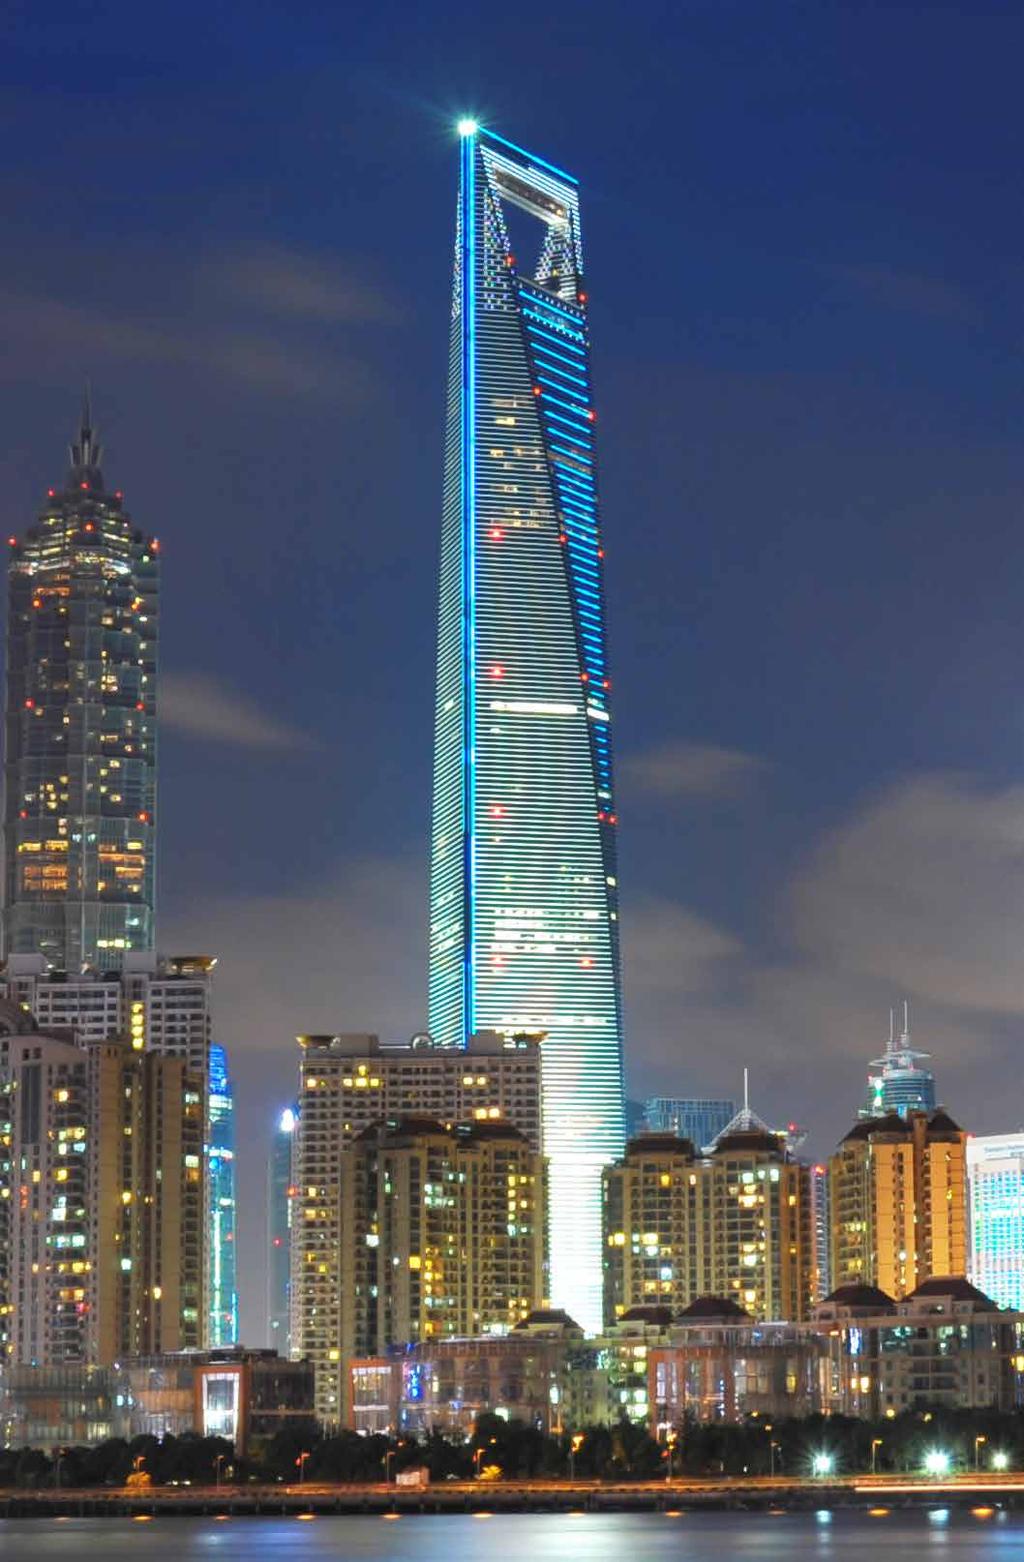 Shanghai World Financial Center Torre de Shanghái Encargado de crear un edificio que simbolizara el carácter emergente de Shanghái como capital internacional, el arquitecto William Pedersen apostó